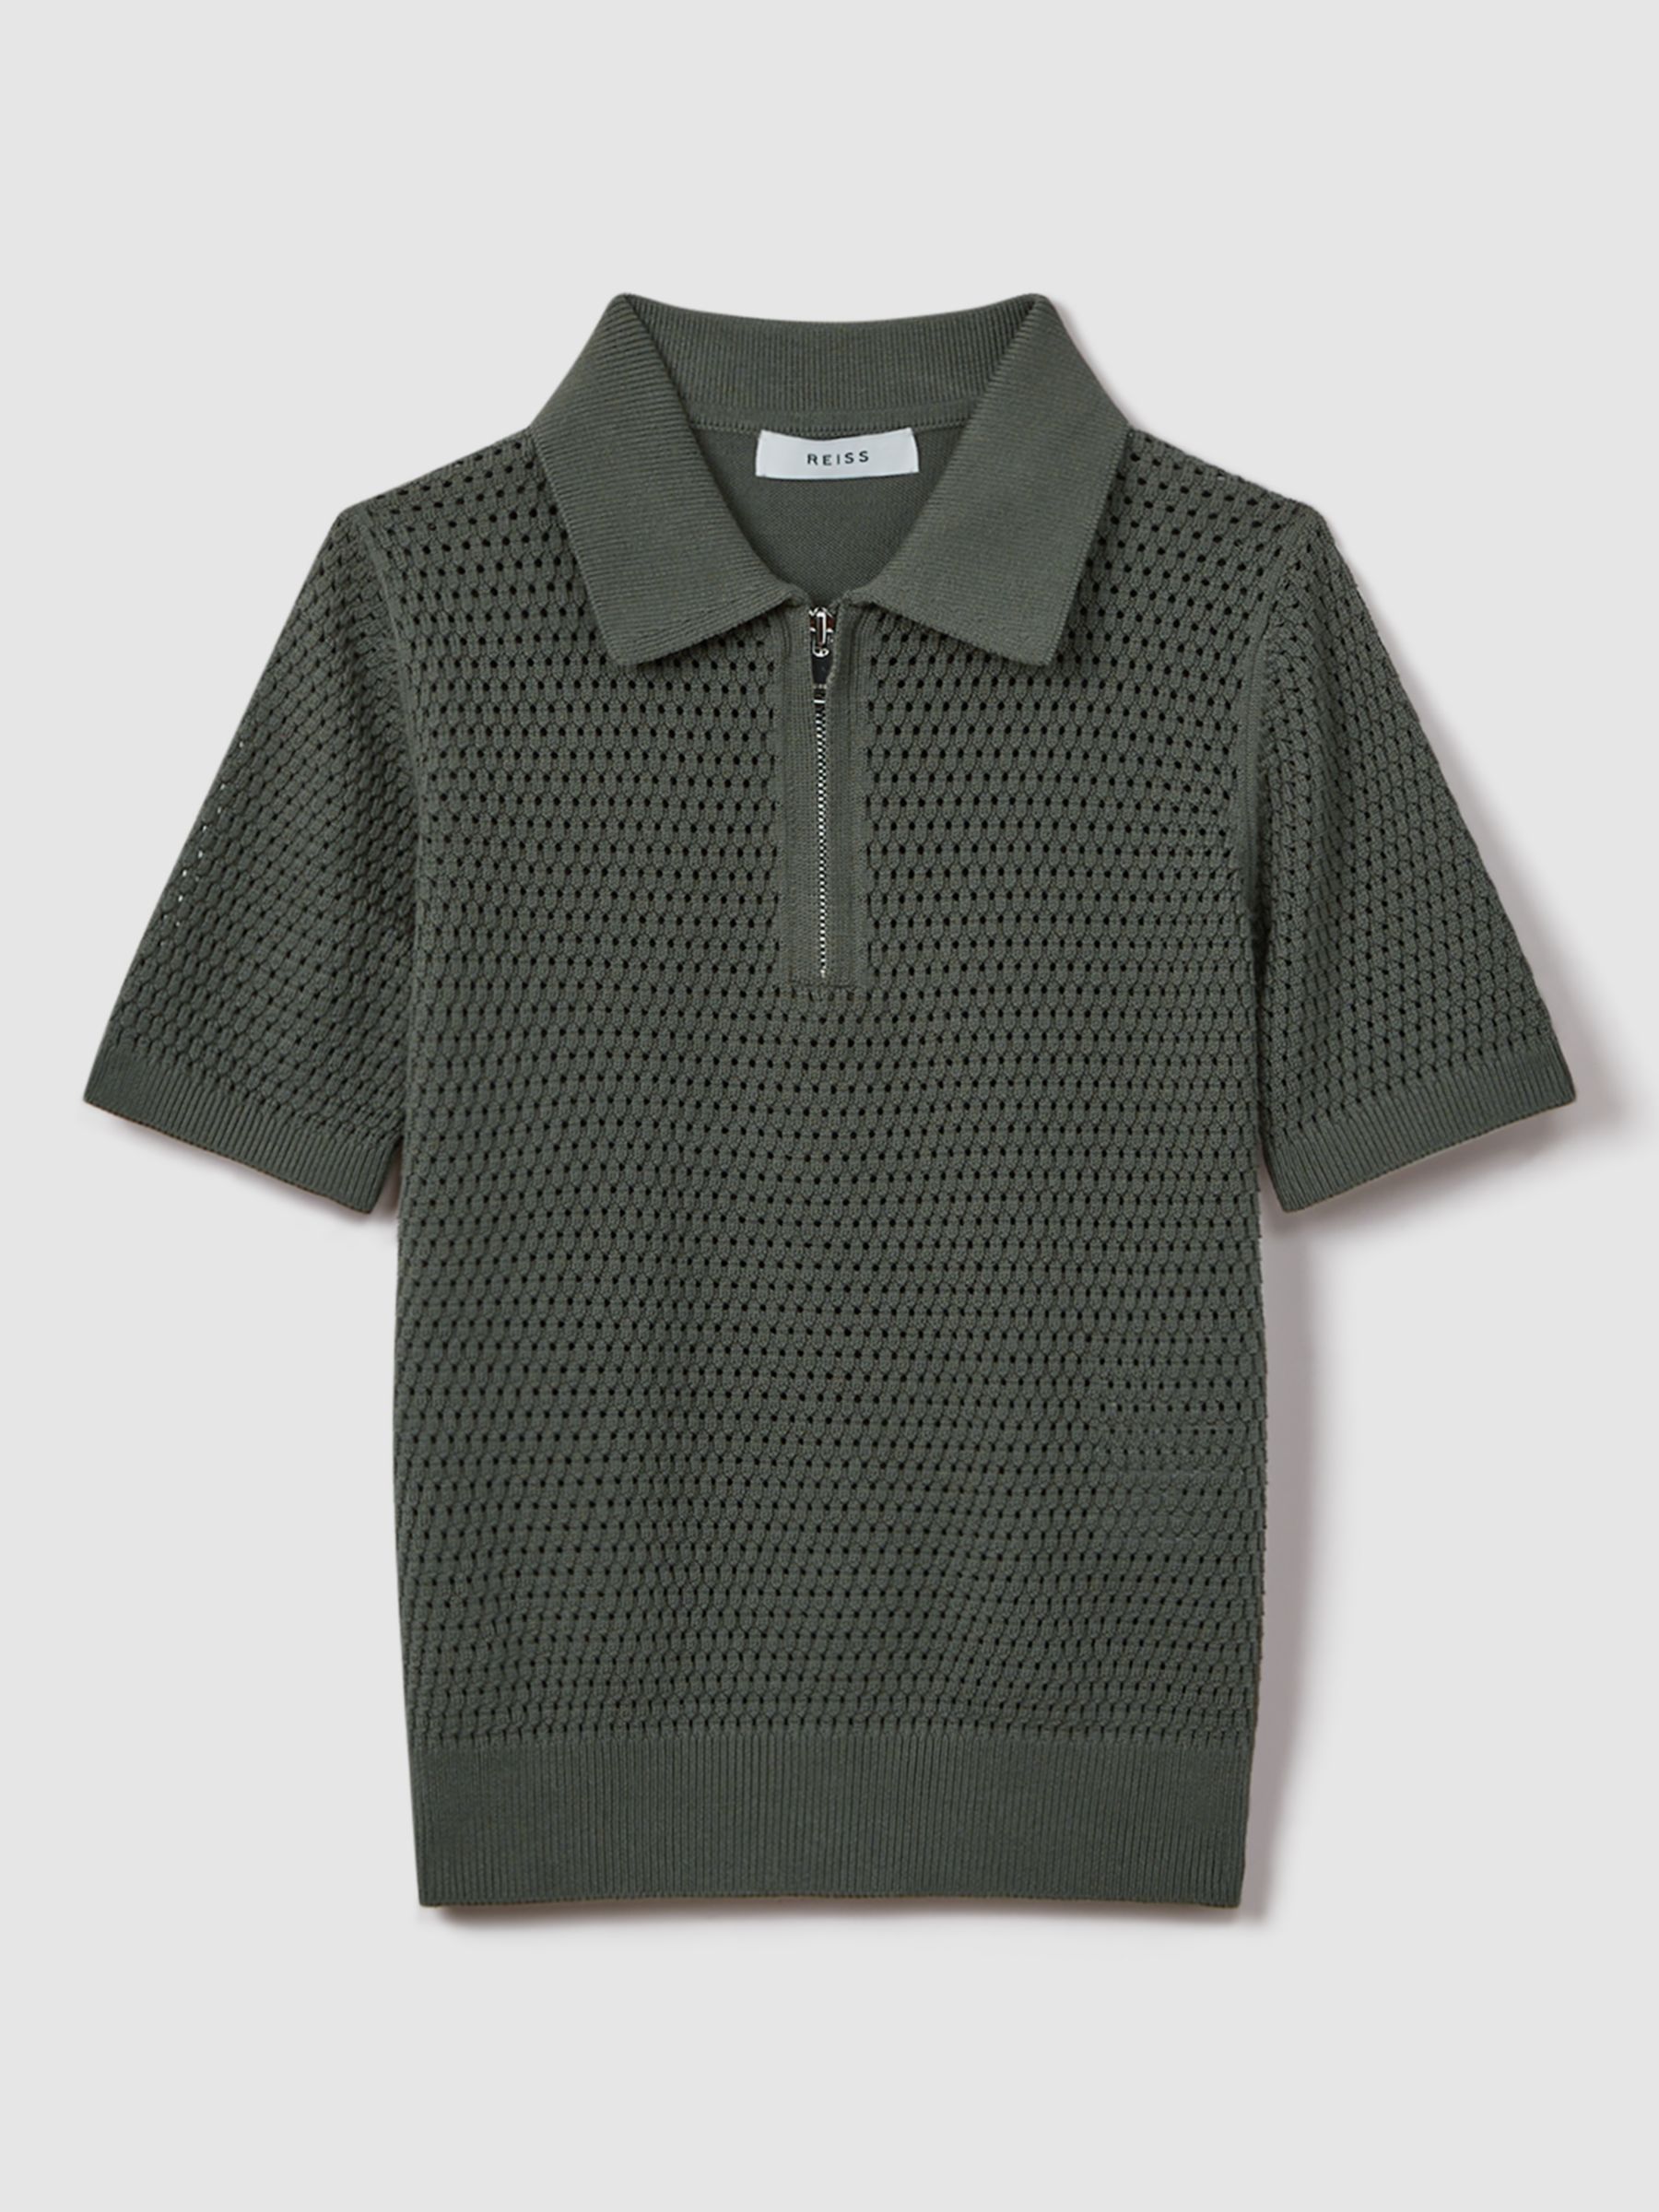 Reiss Kids' Burnham Half Zip Textured Polo Shirt, Dark Sage, 3-4 years